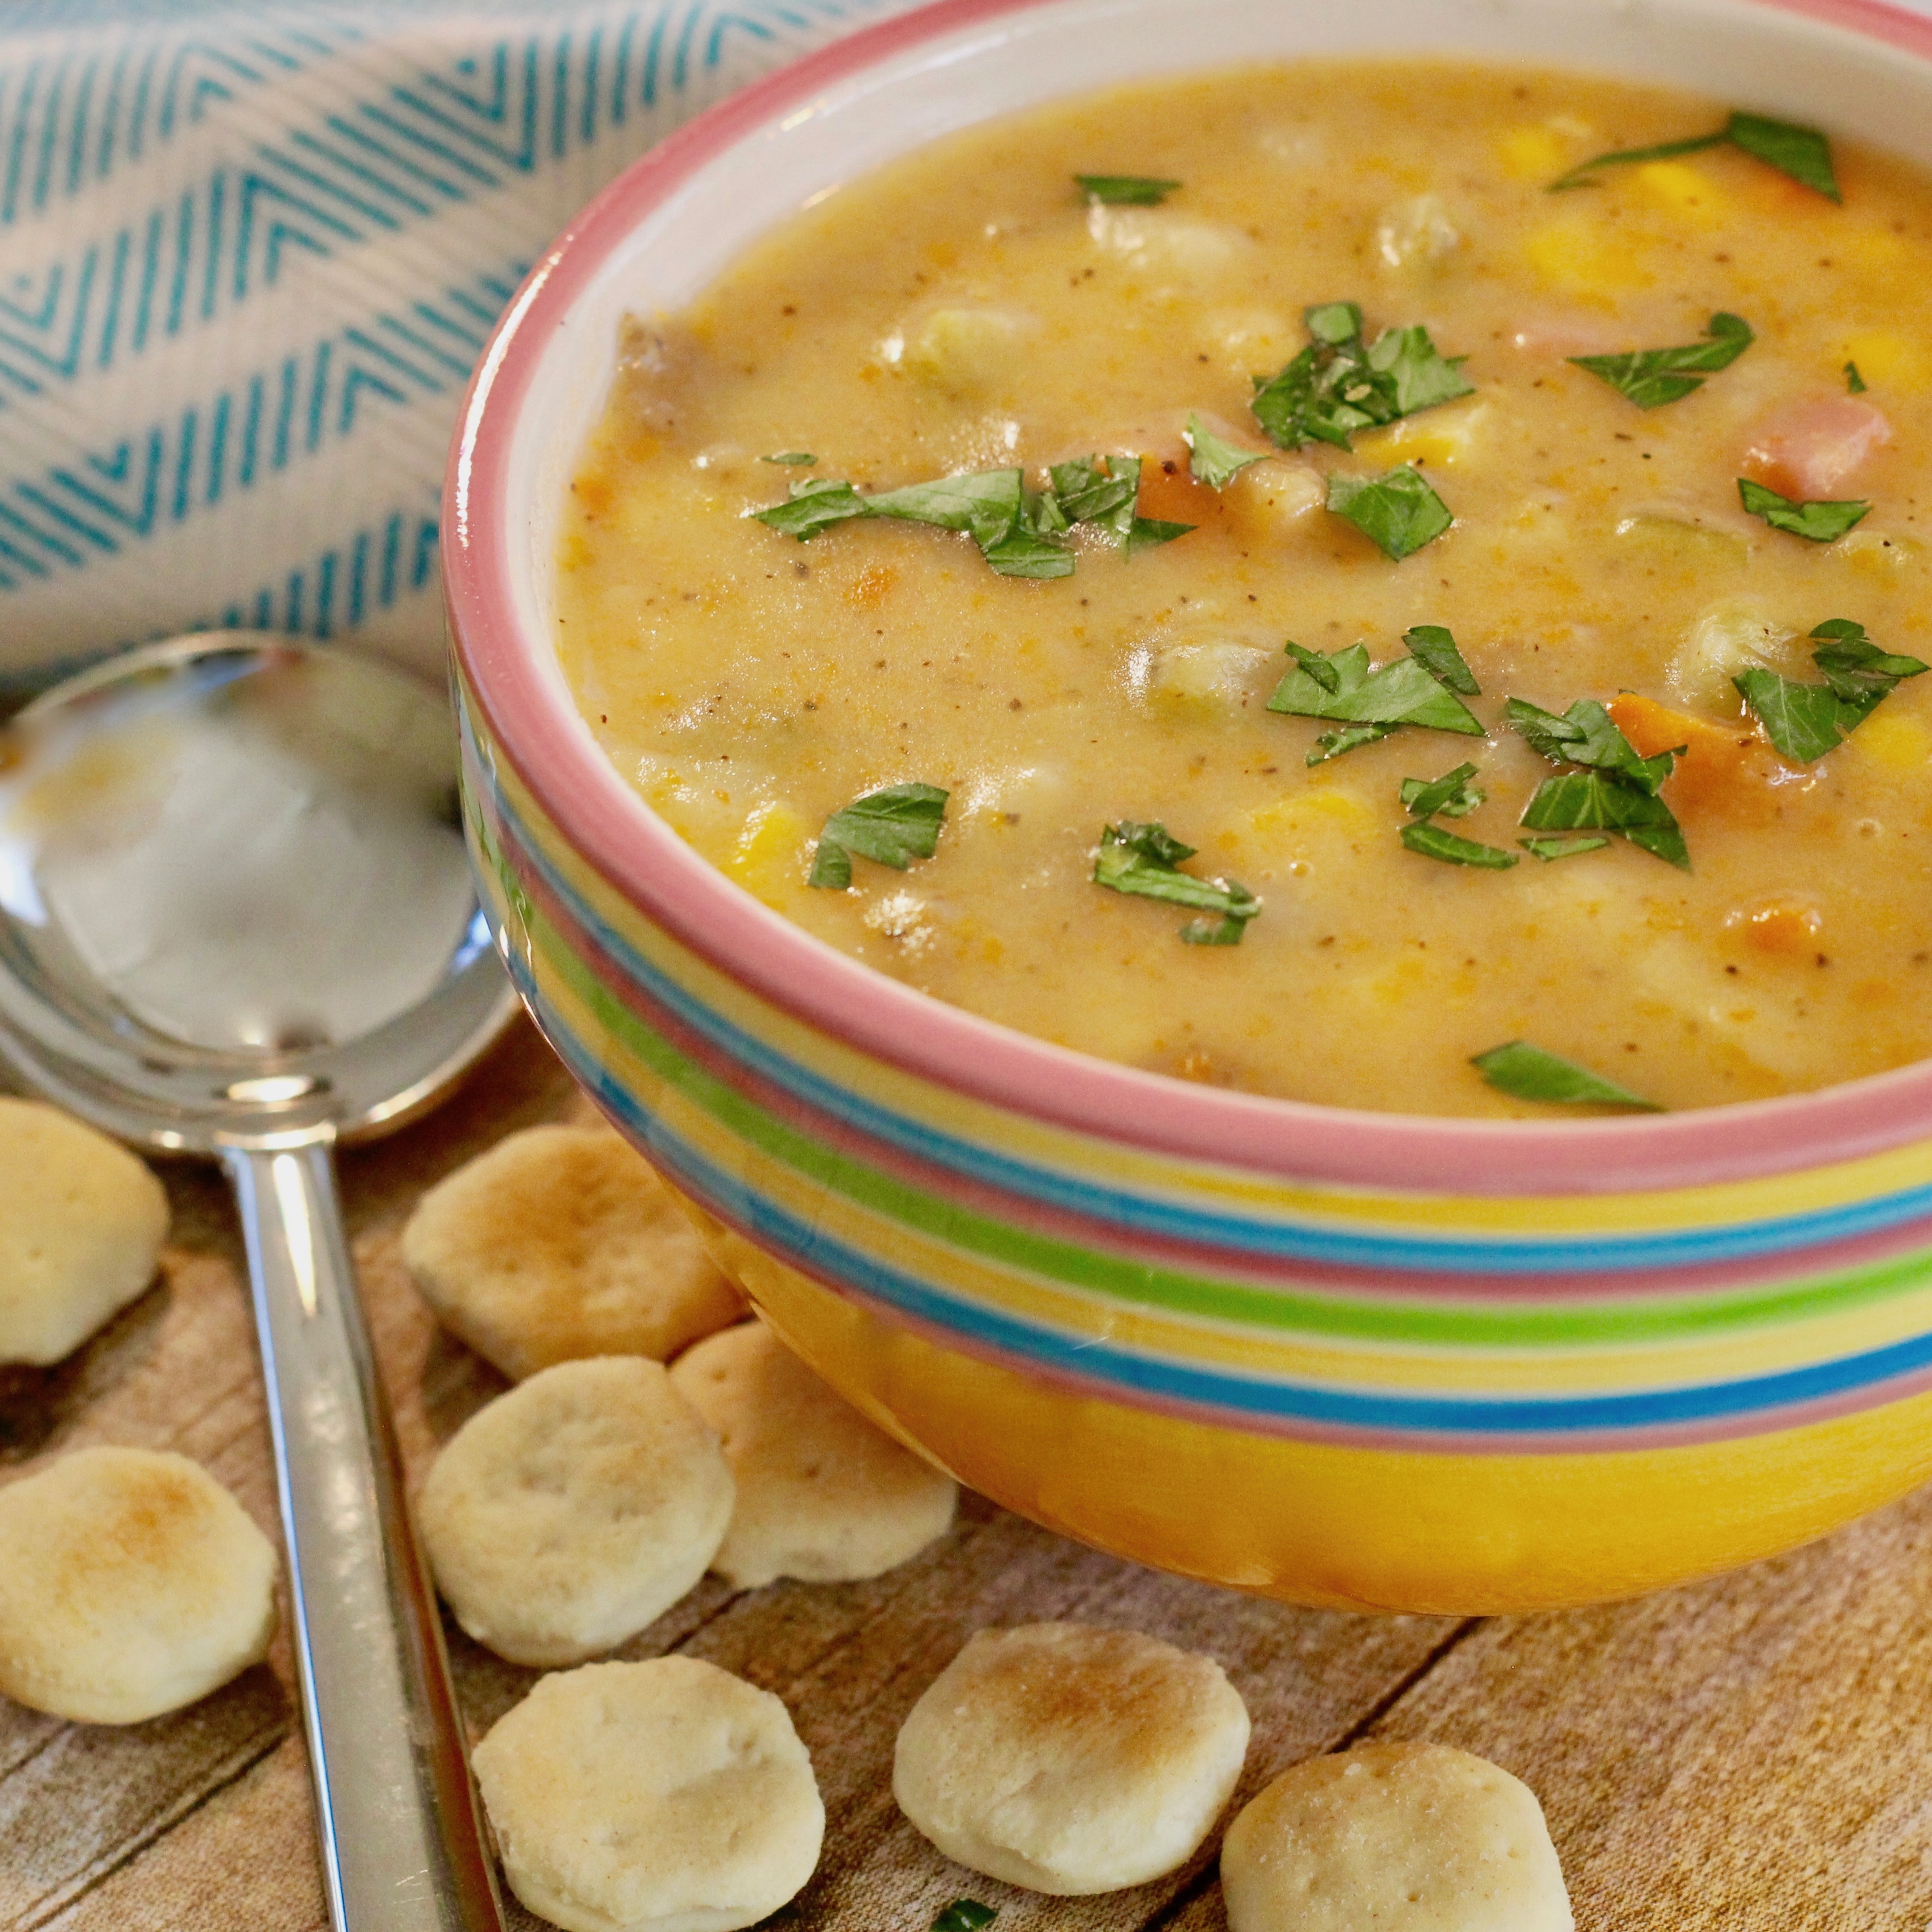 Potato Soup or Chowder